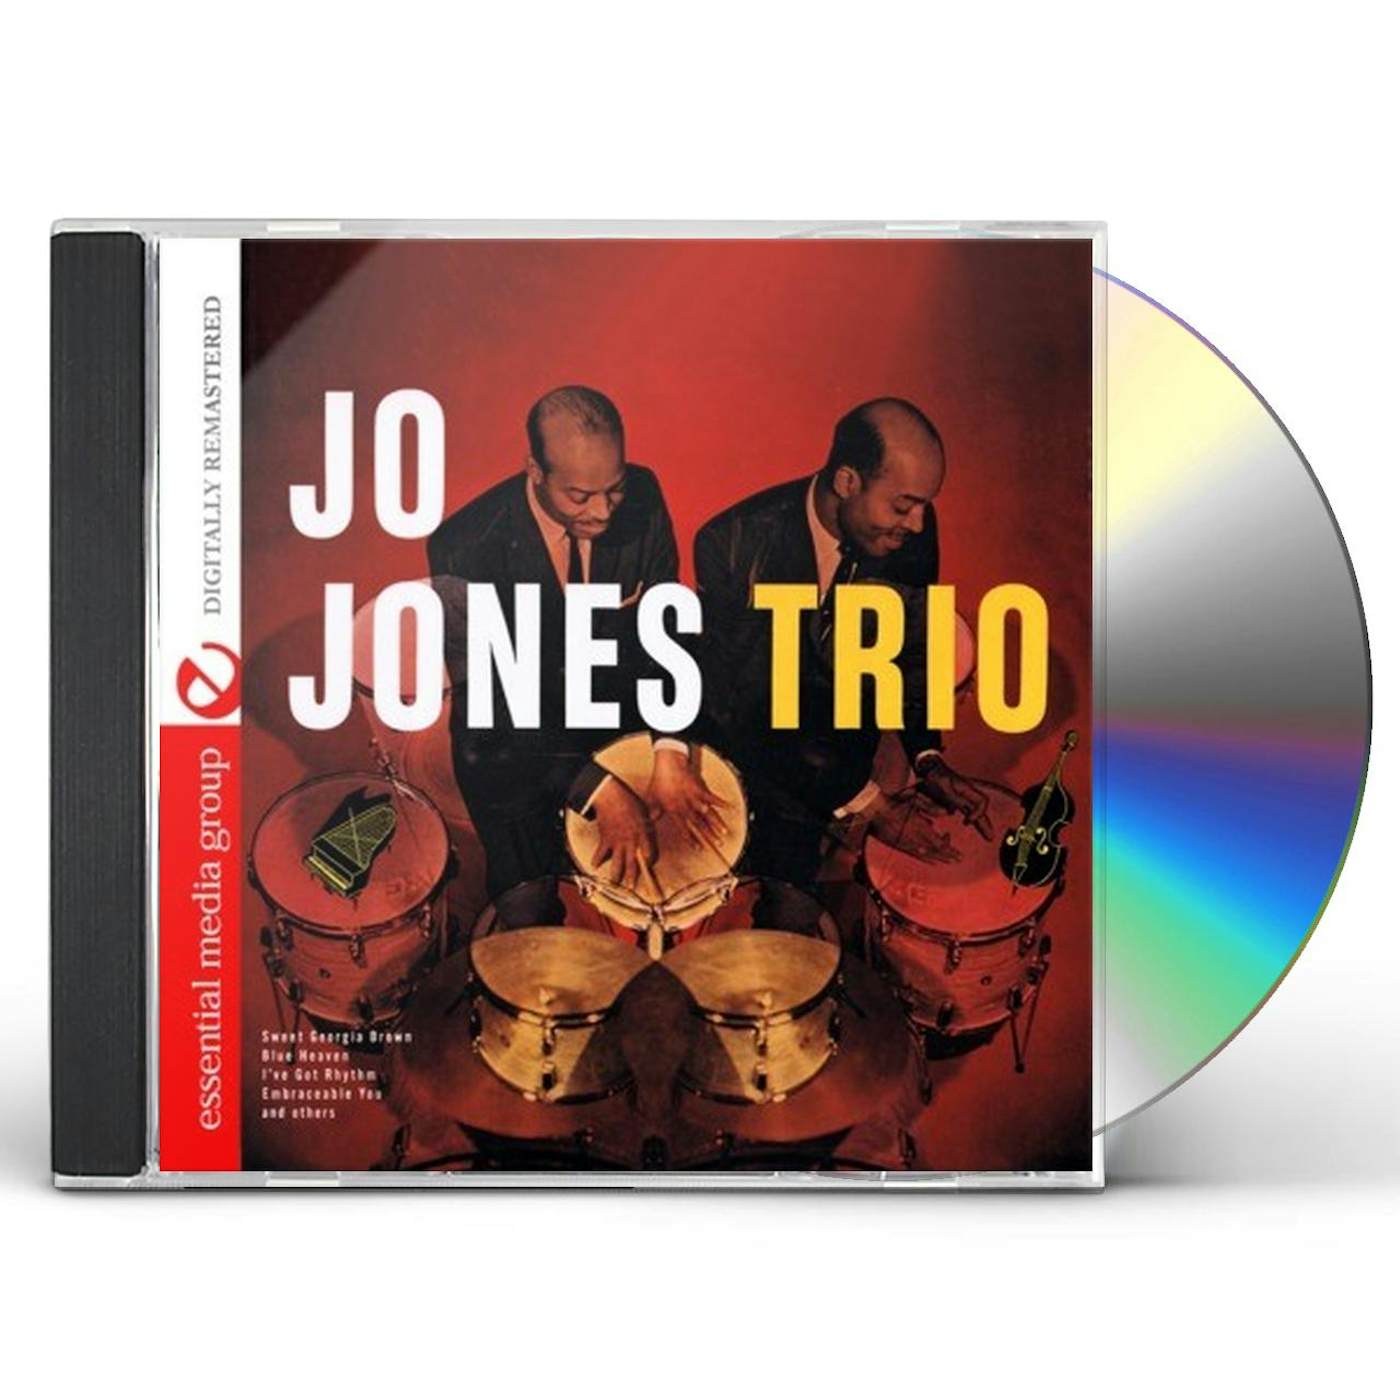 JO JONES TRIO CD